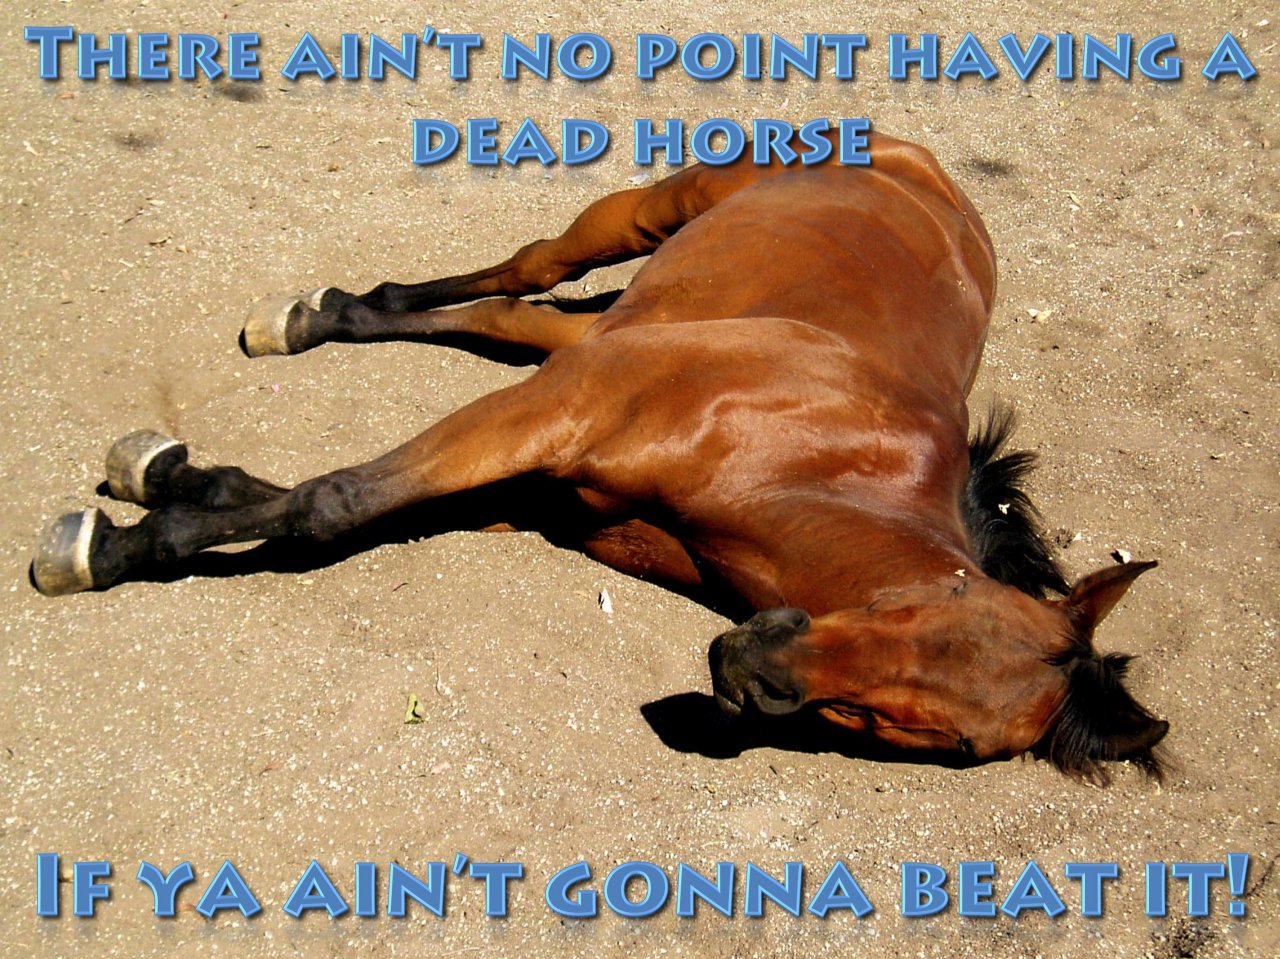 001 - Beating a Dead Horse.jpeg